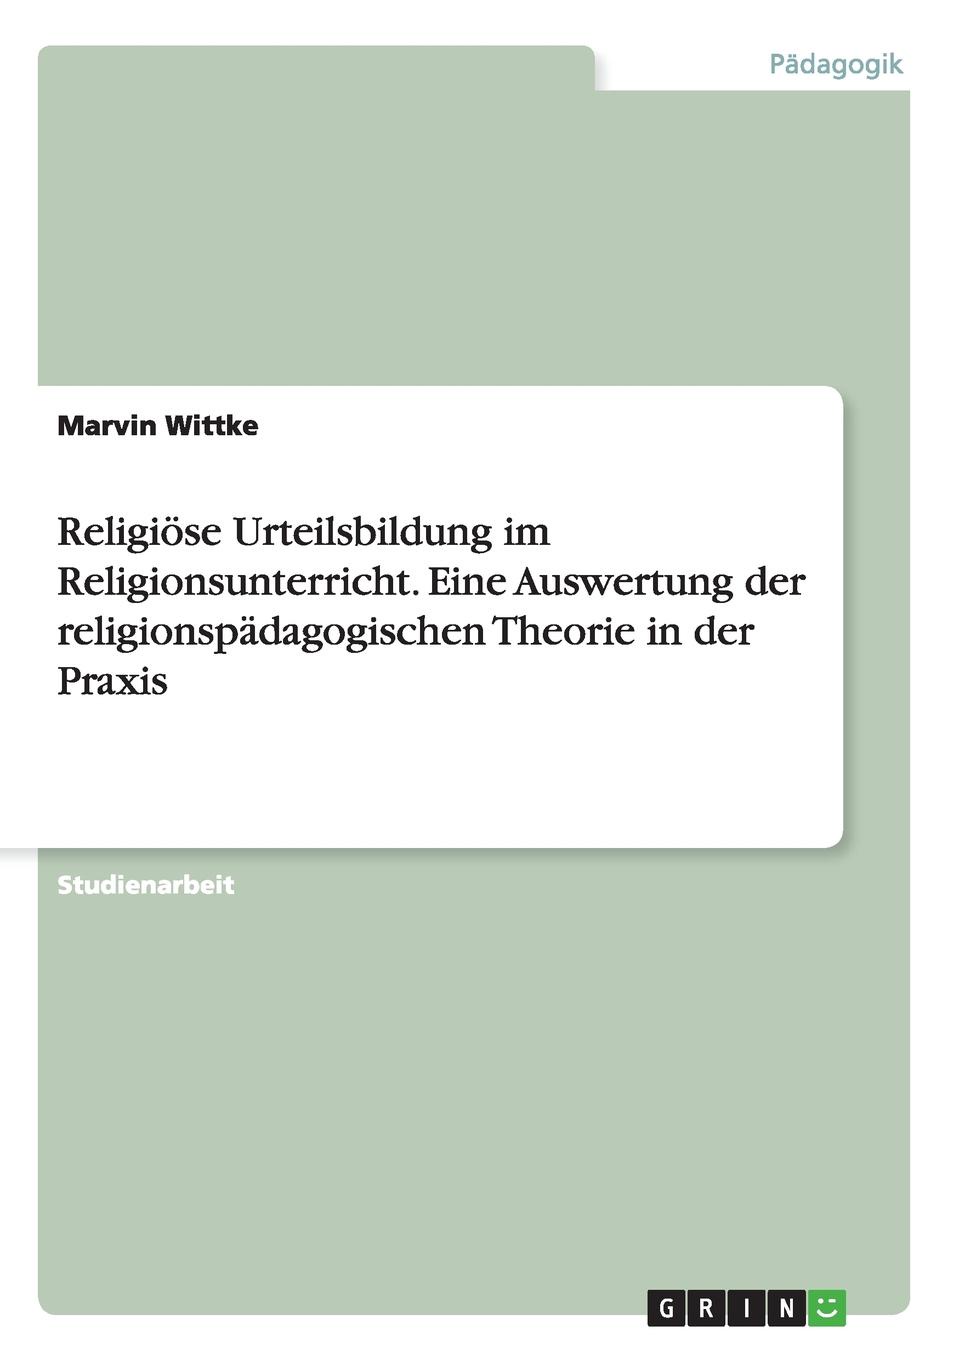 Religiose Urteilsbildung im Religionsunterricht. Eine Auswertung der religionspadagogischen Theorie in der Praxis